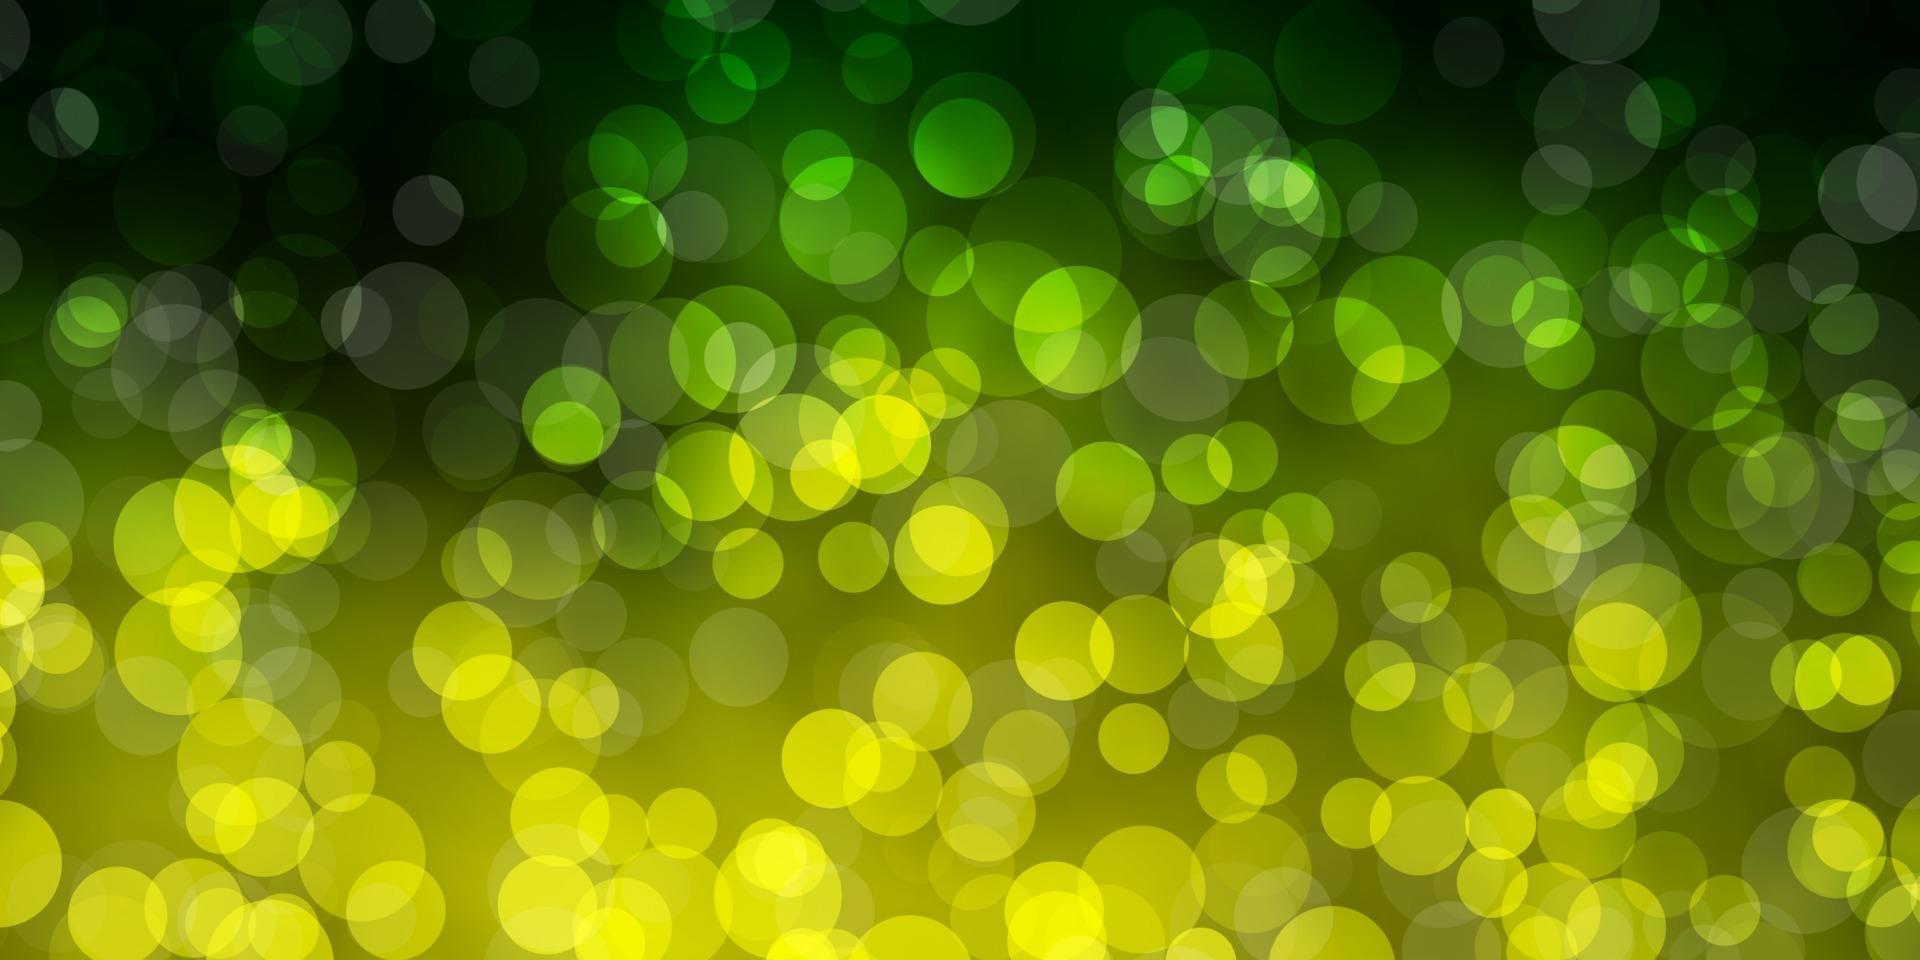 trama vettoriale verde chiaro, giallo con dischi.